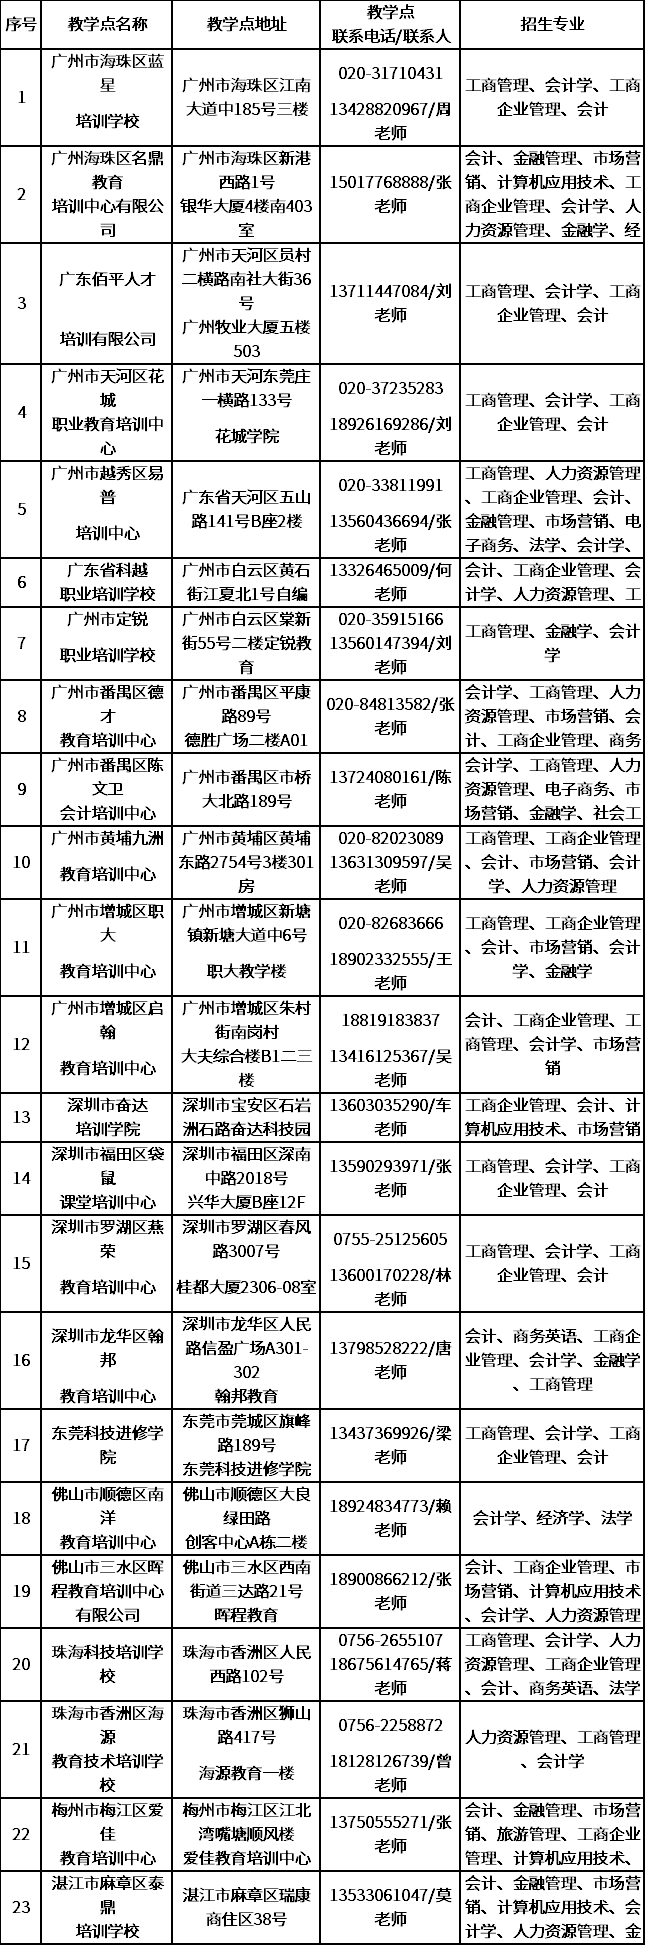 广东财经大学成人高等学历教育校外教学点一览表.png